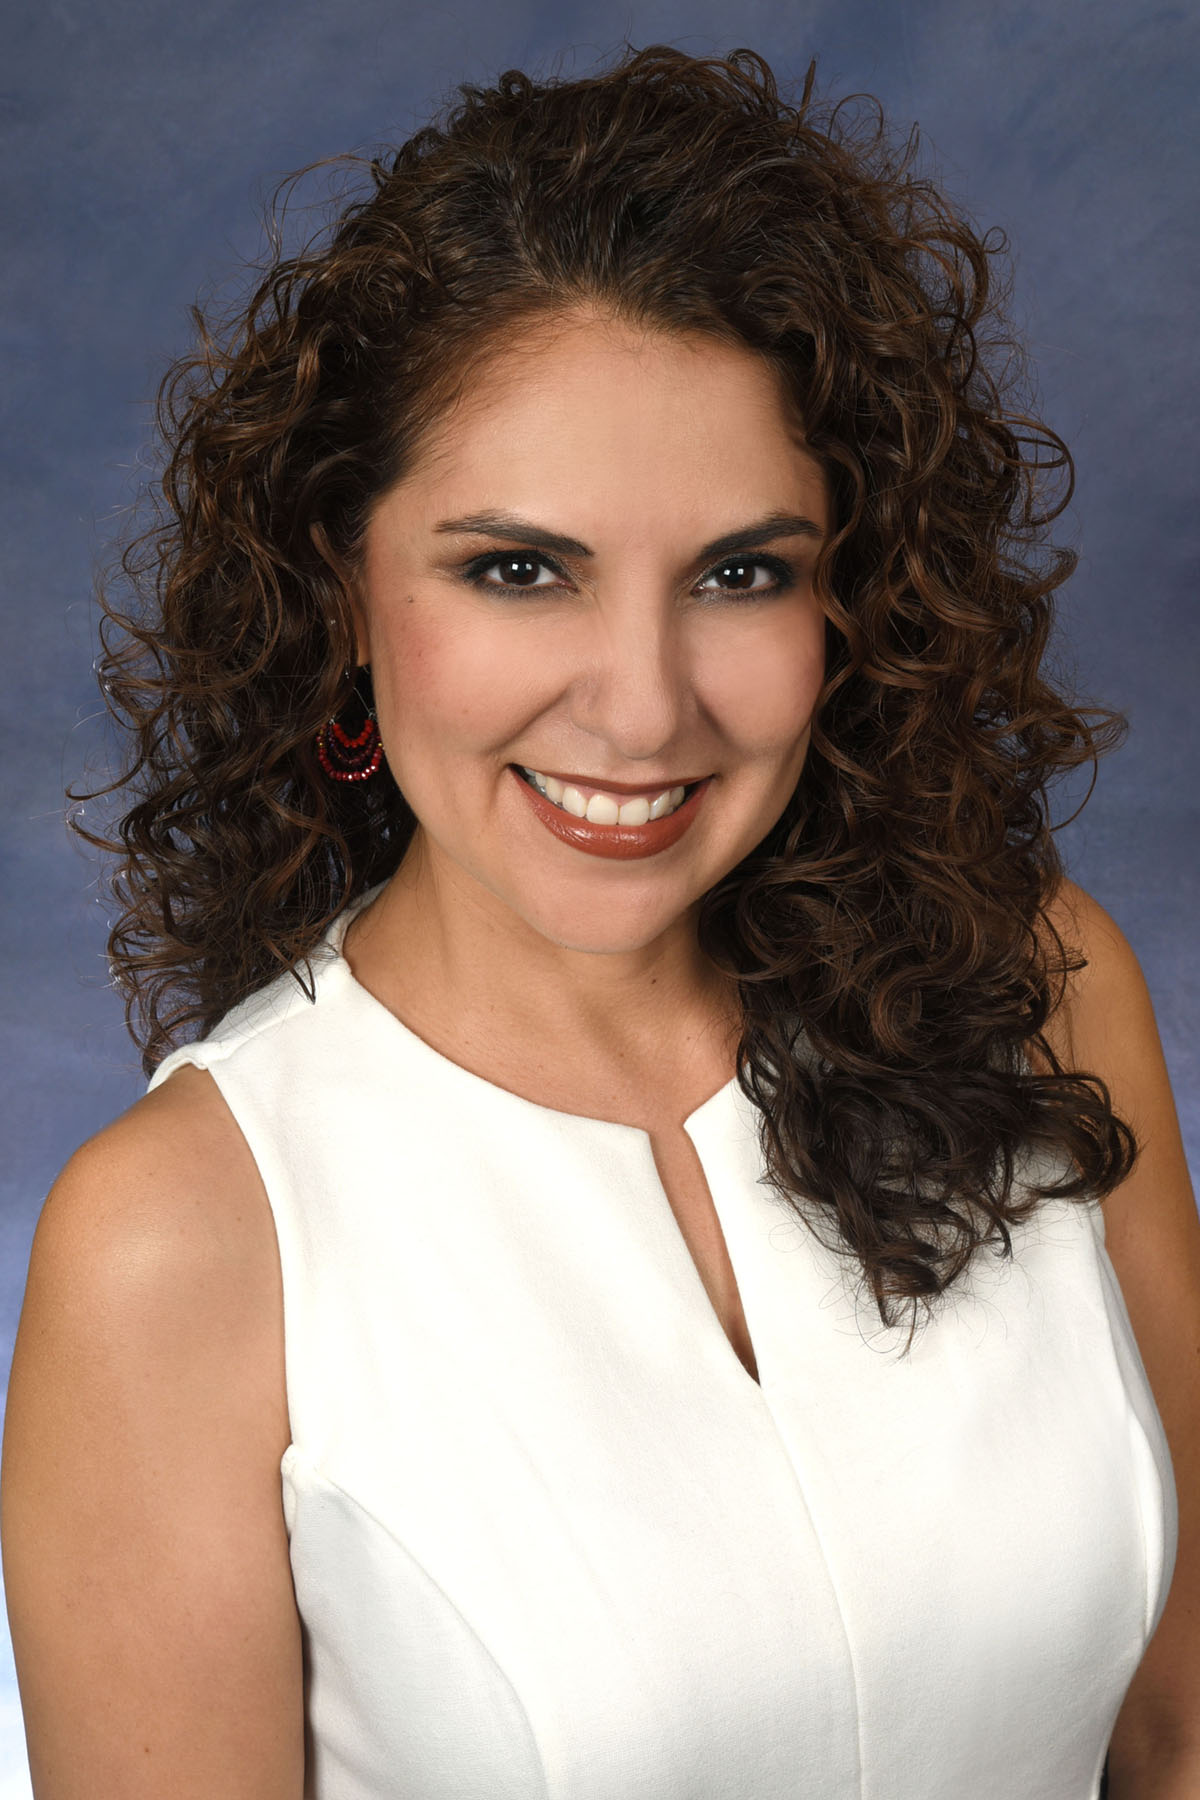 Jessica R. Ortega, Ph.D